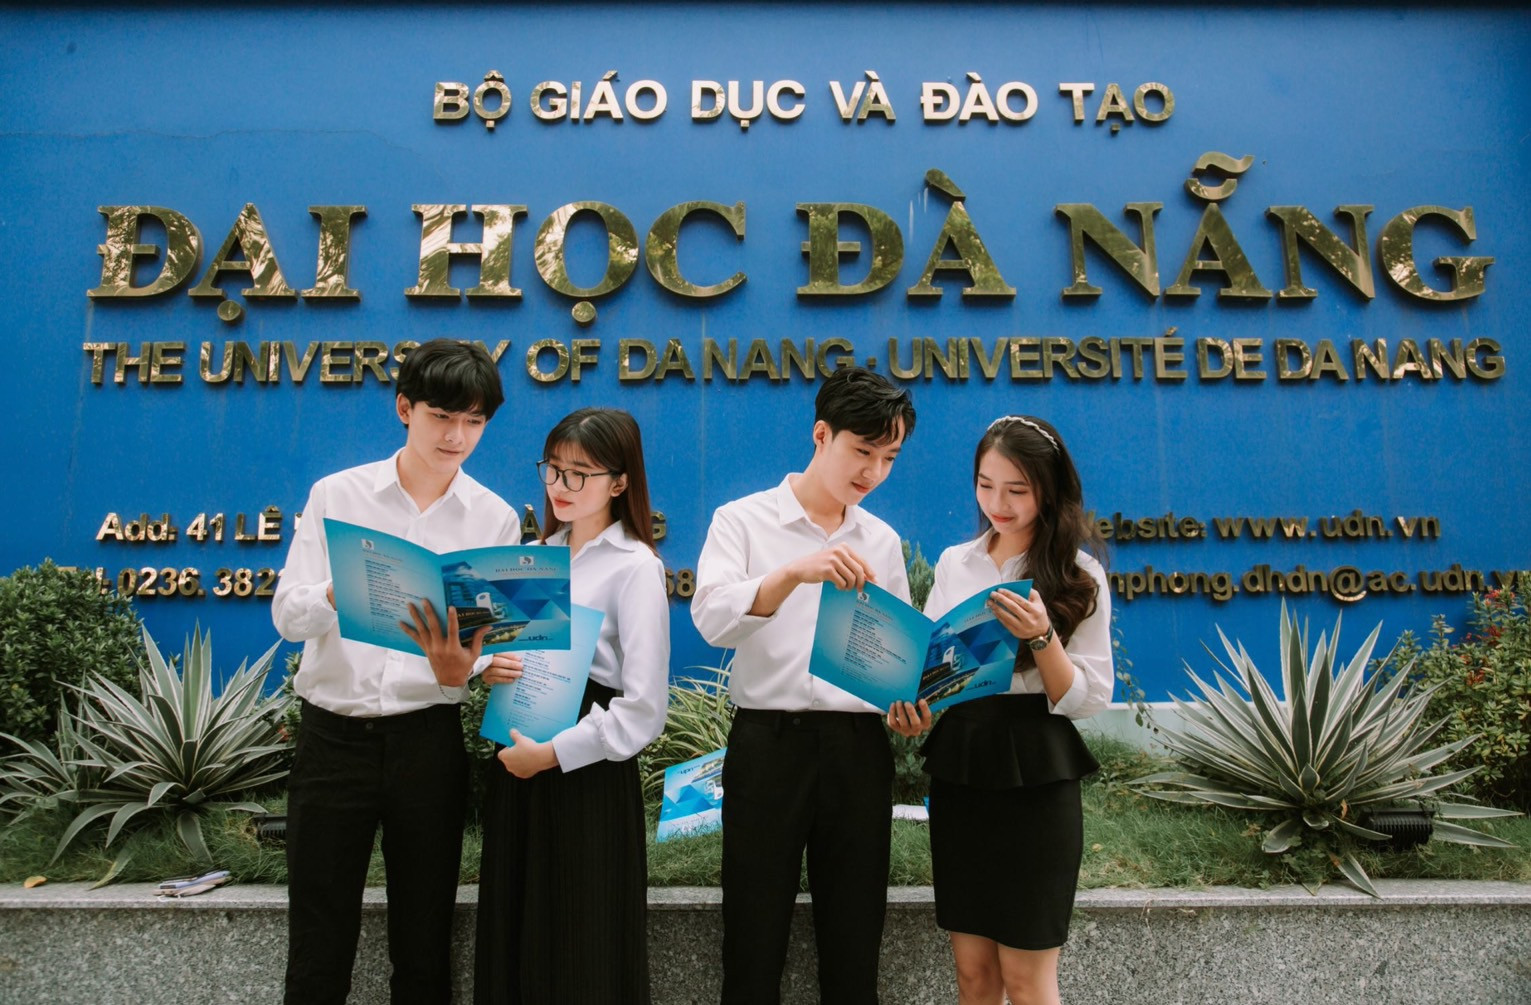 Đại học Đà Nẵng là một trong những trường đại học top đầu Việt Nam